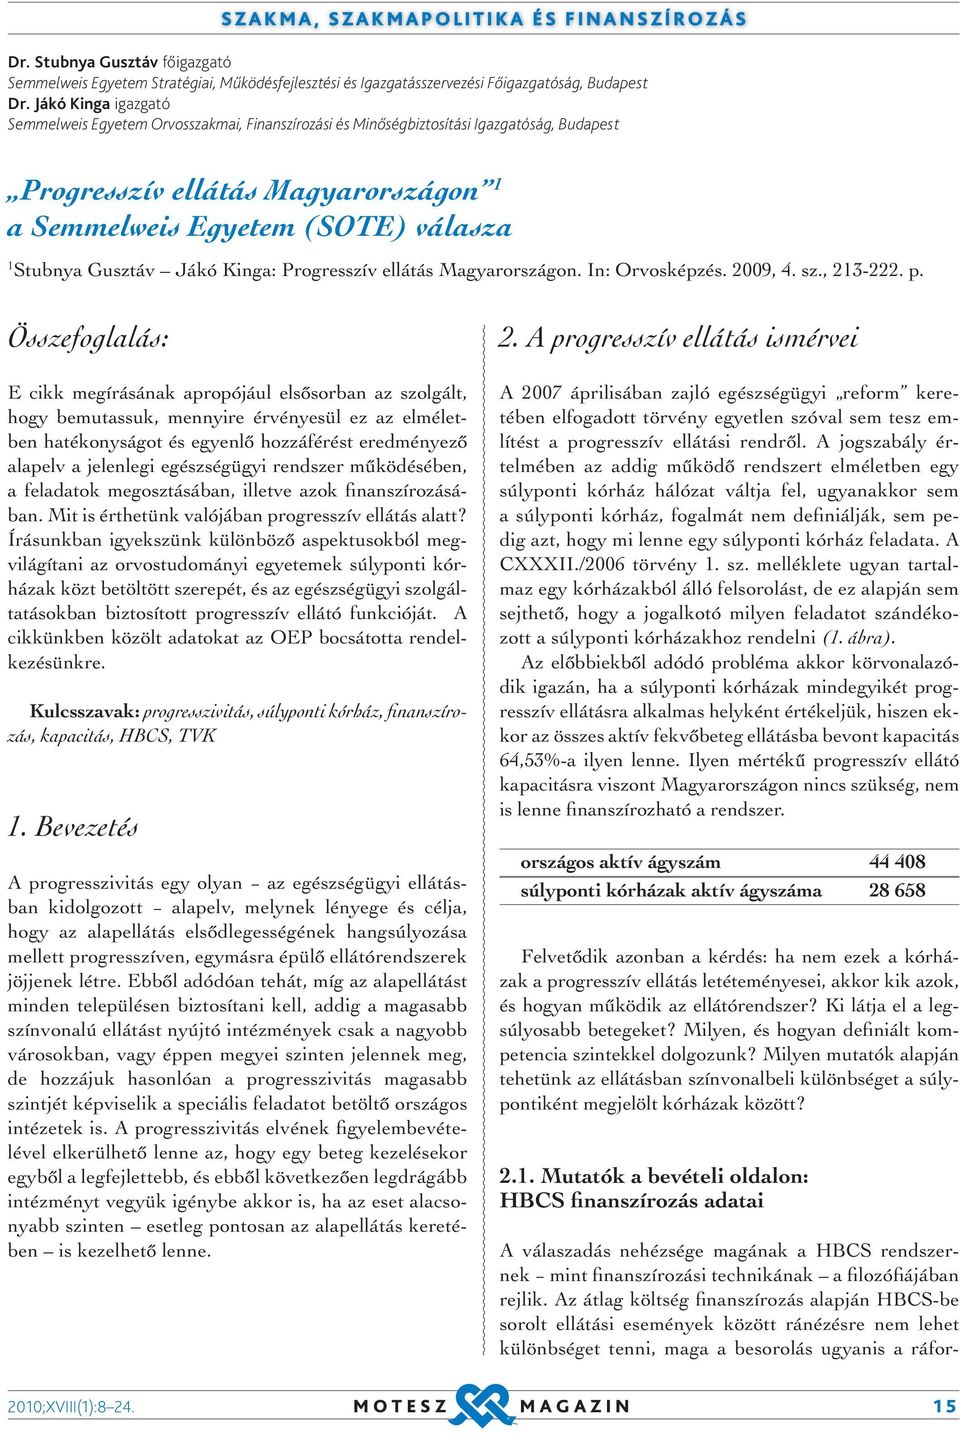 Gusztáv Jákó Kinga: Progresszív ellátás Magyarországon. In: Orvosképzés. 2009, 4. sz., 213-222. p.